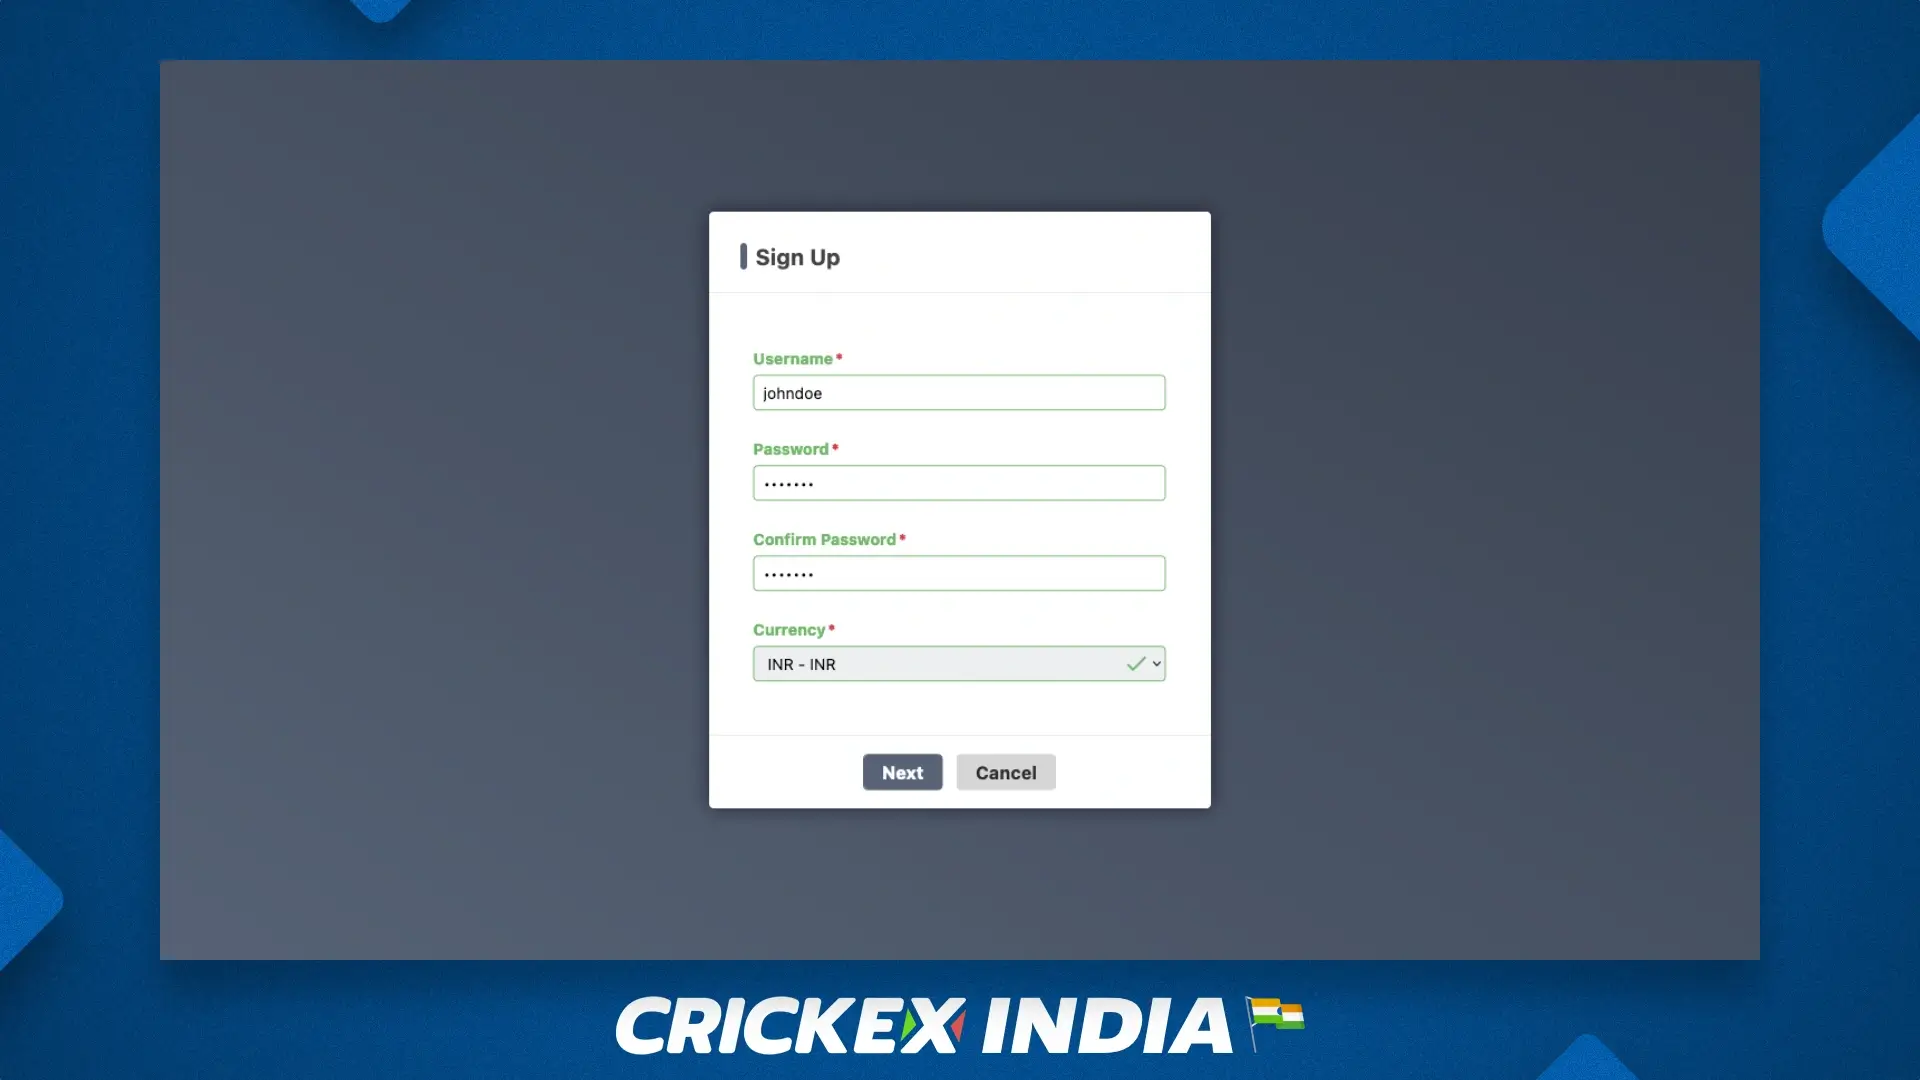 भारत और बांग्लादेश के उपयोगकर्ताओं के लिए Crickex संबद्ध कार्यक्रम में पंजीकरण